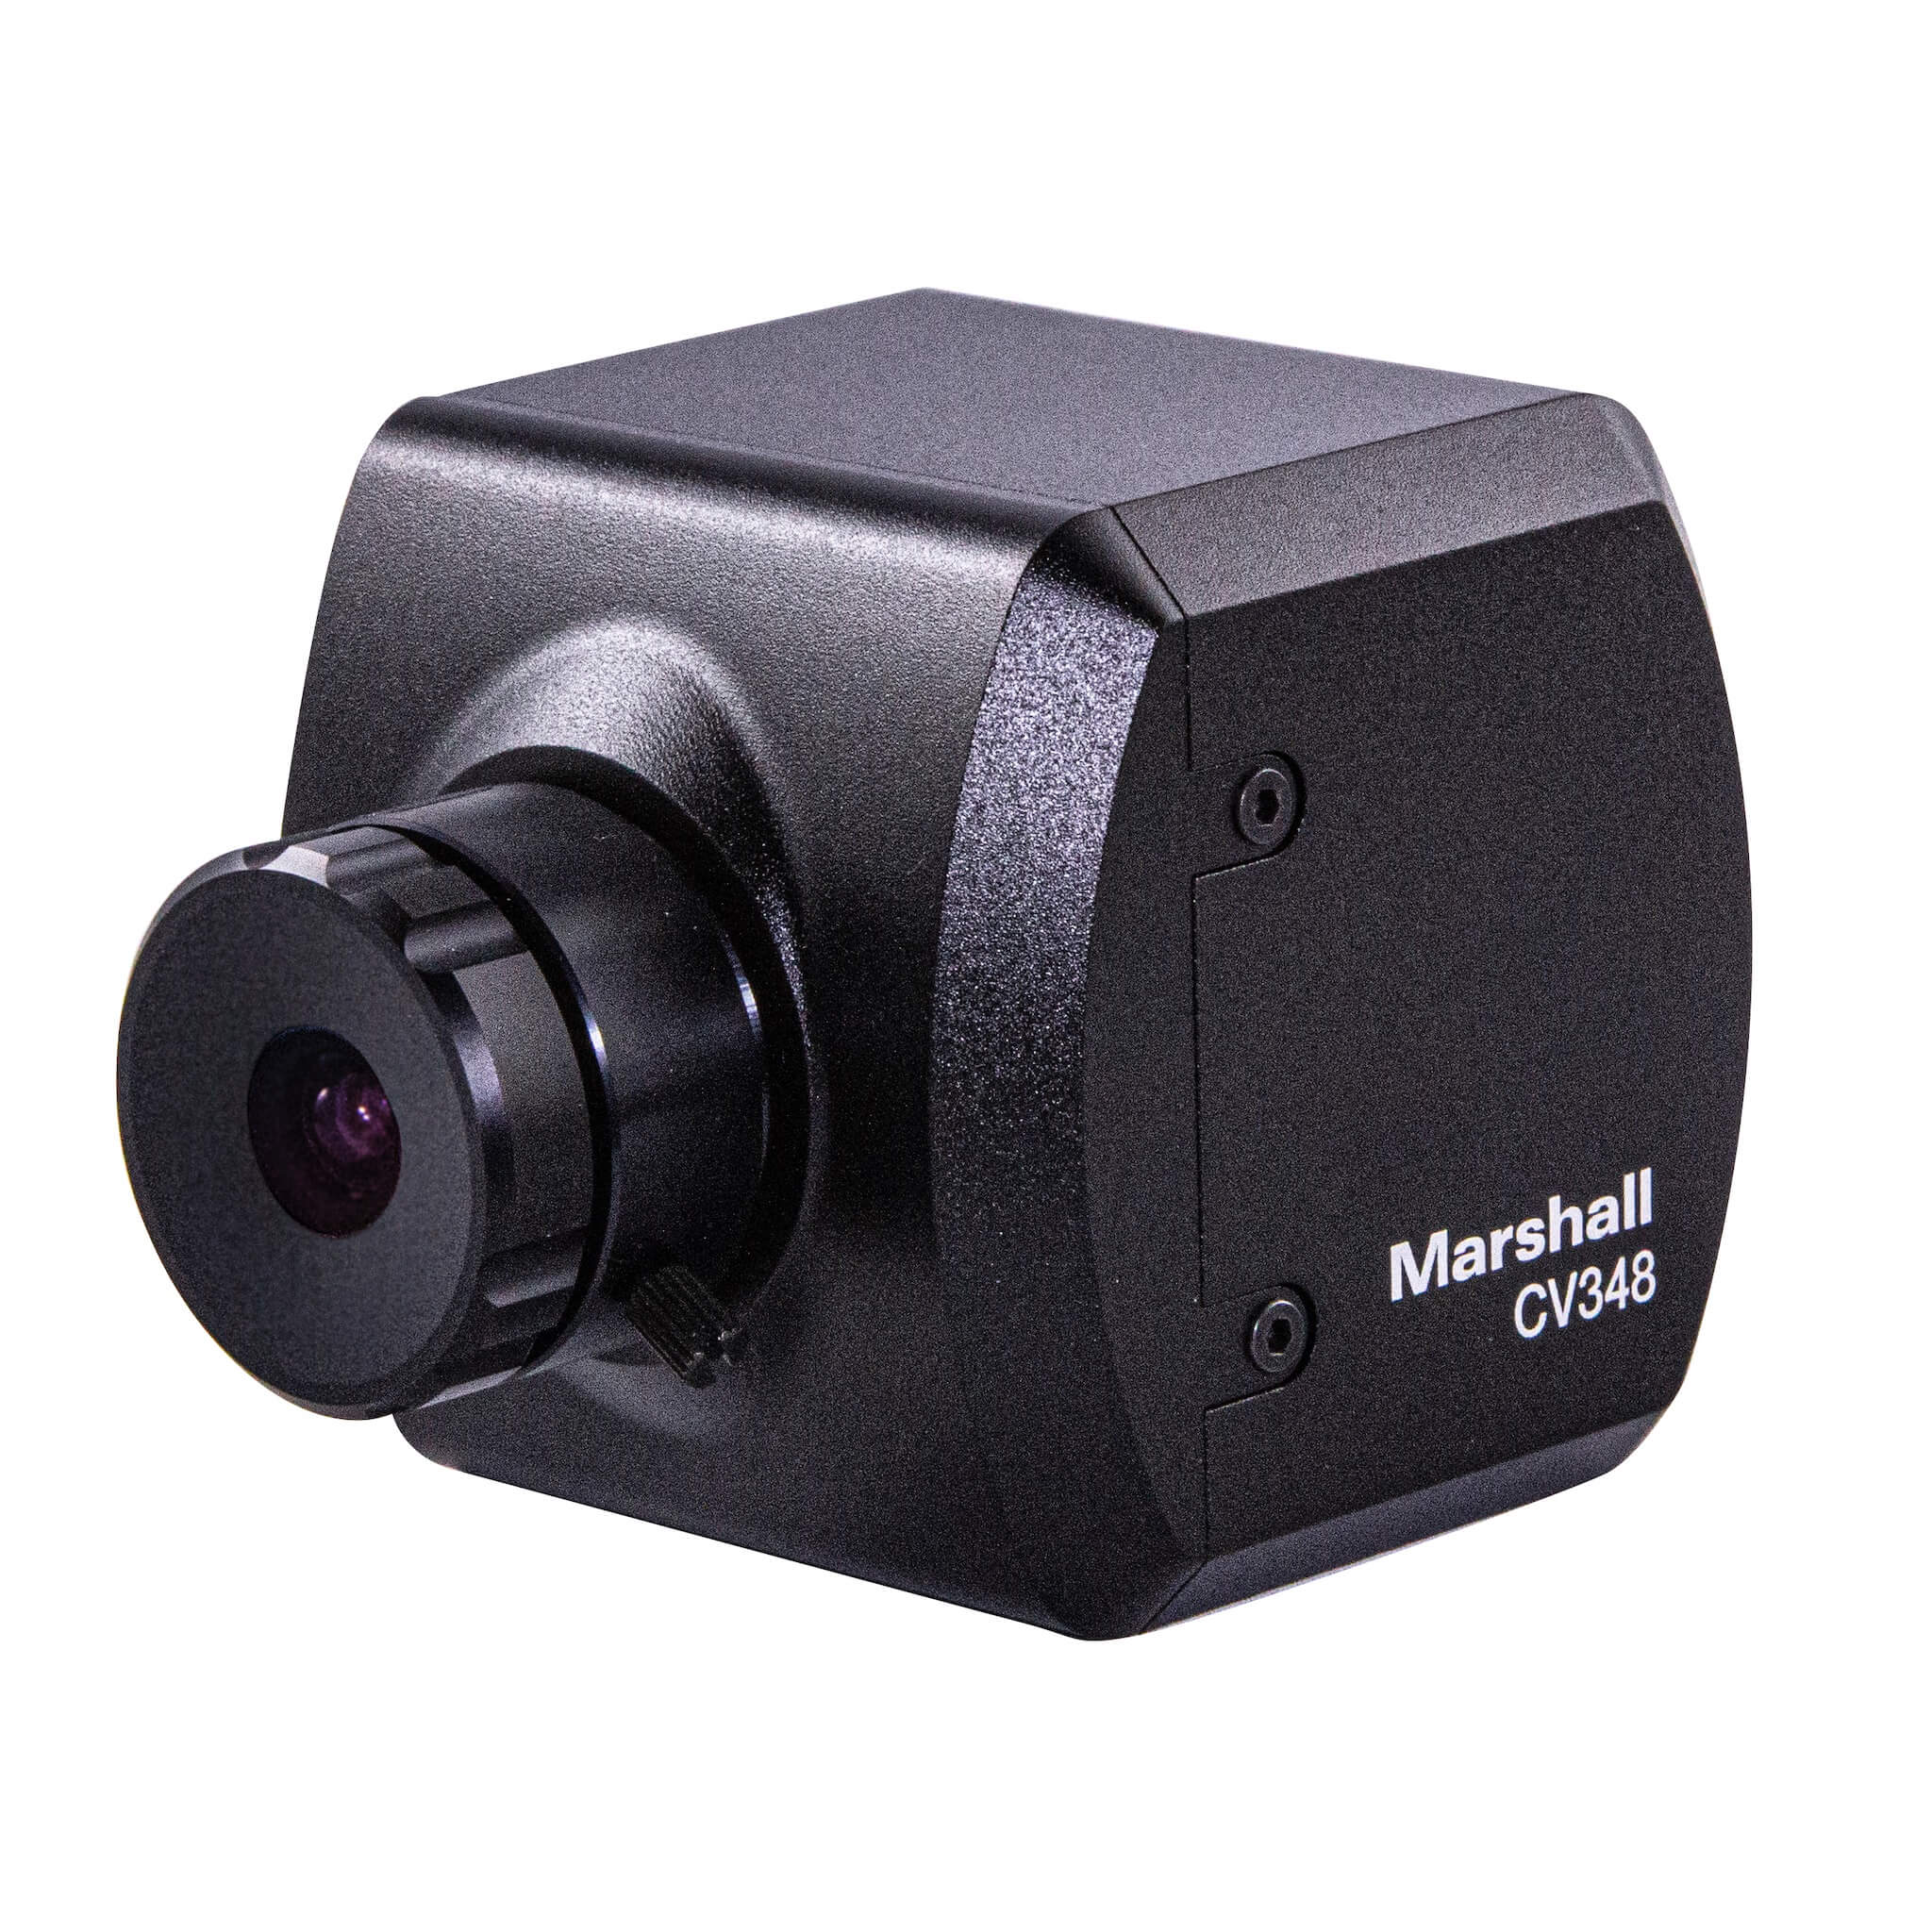 Marshall CV348 - Compact POV Camera 3G/HD-SDI, left angle